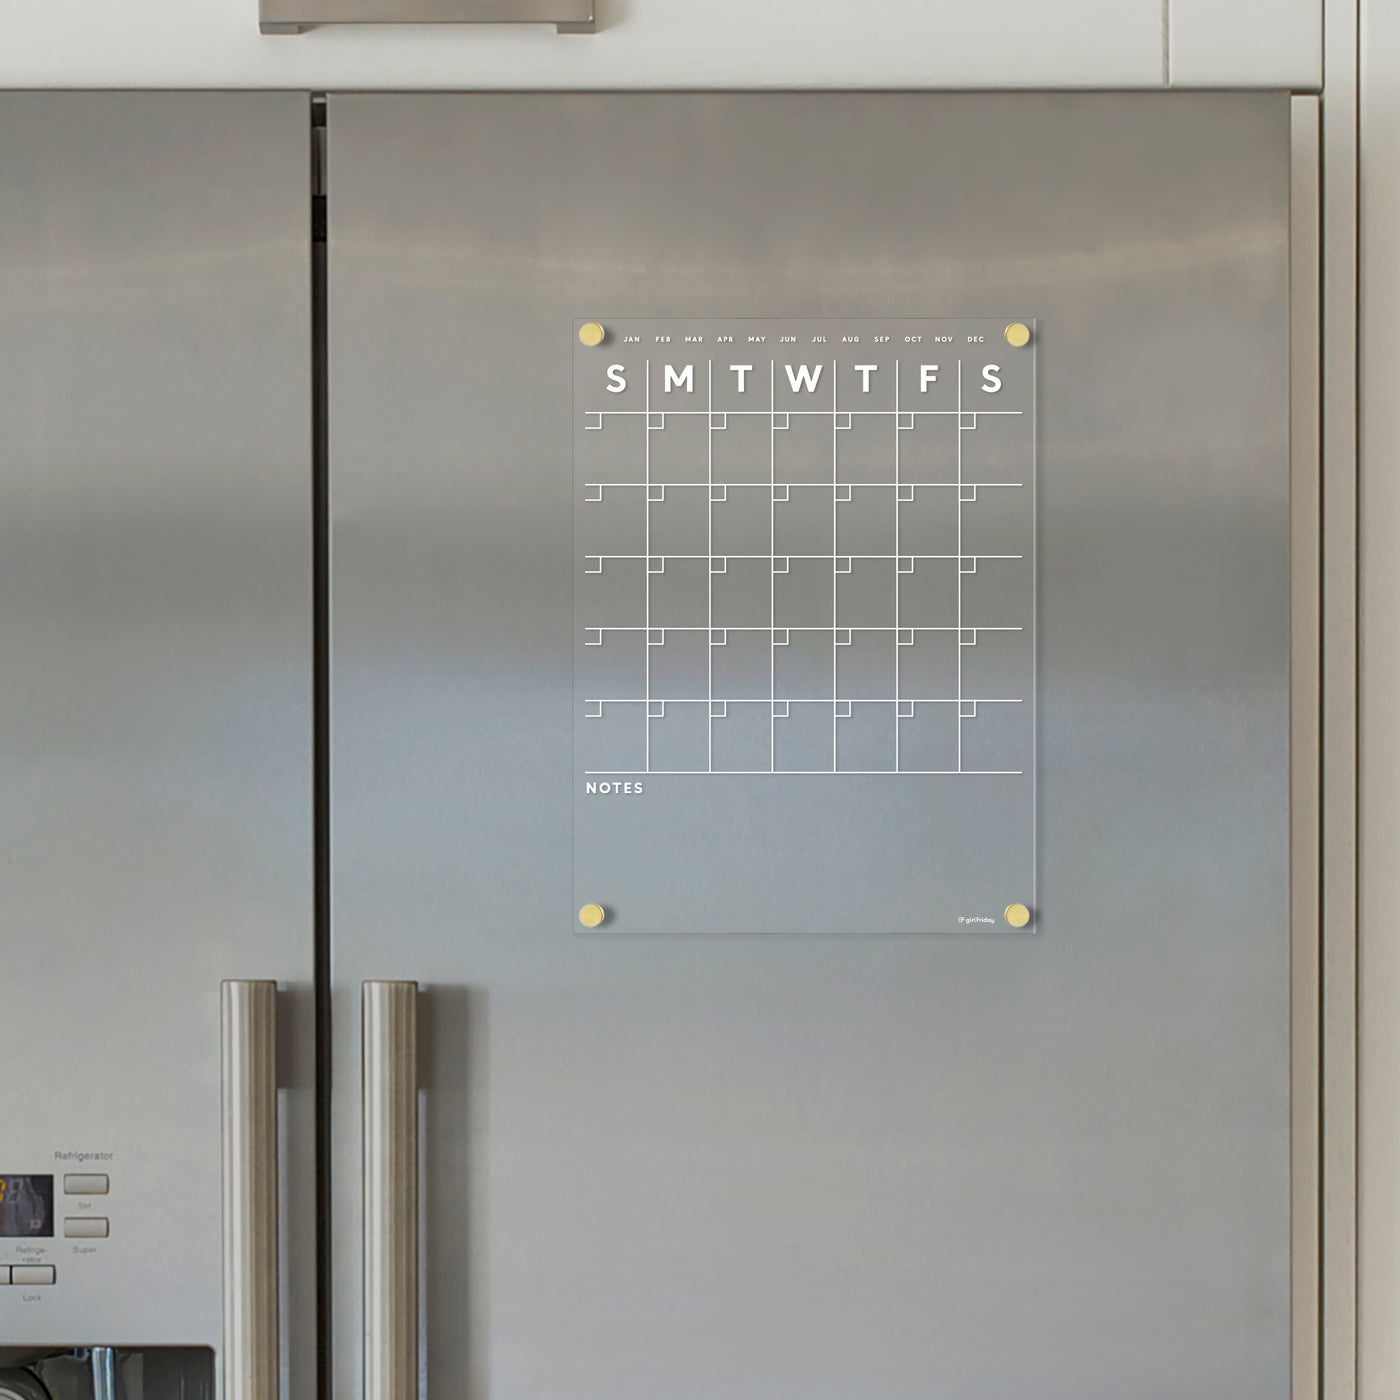 3.5x6.25 Inch Tear Off Refrigerator Calendar Magnets